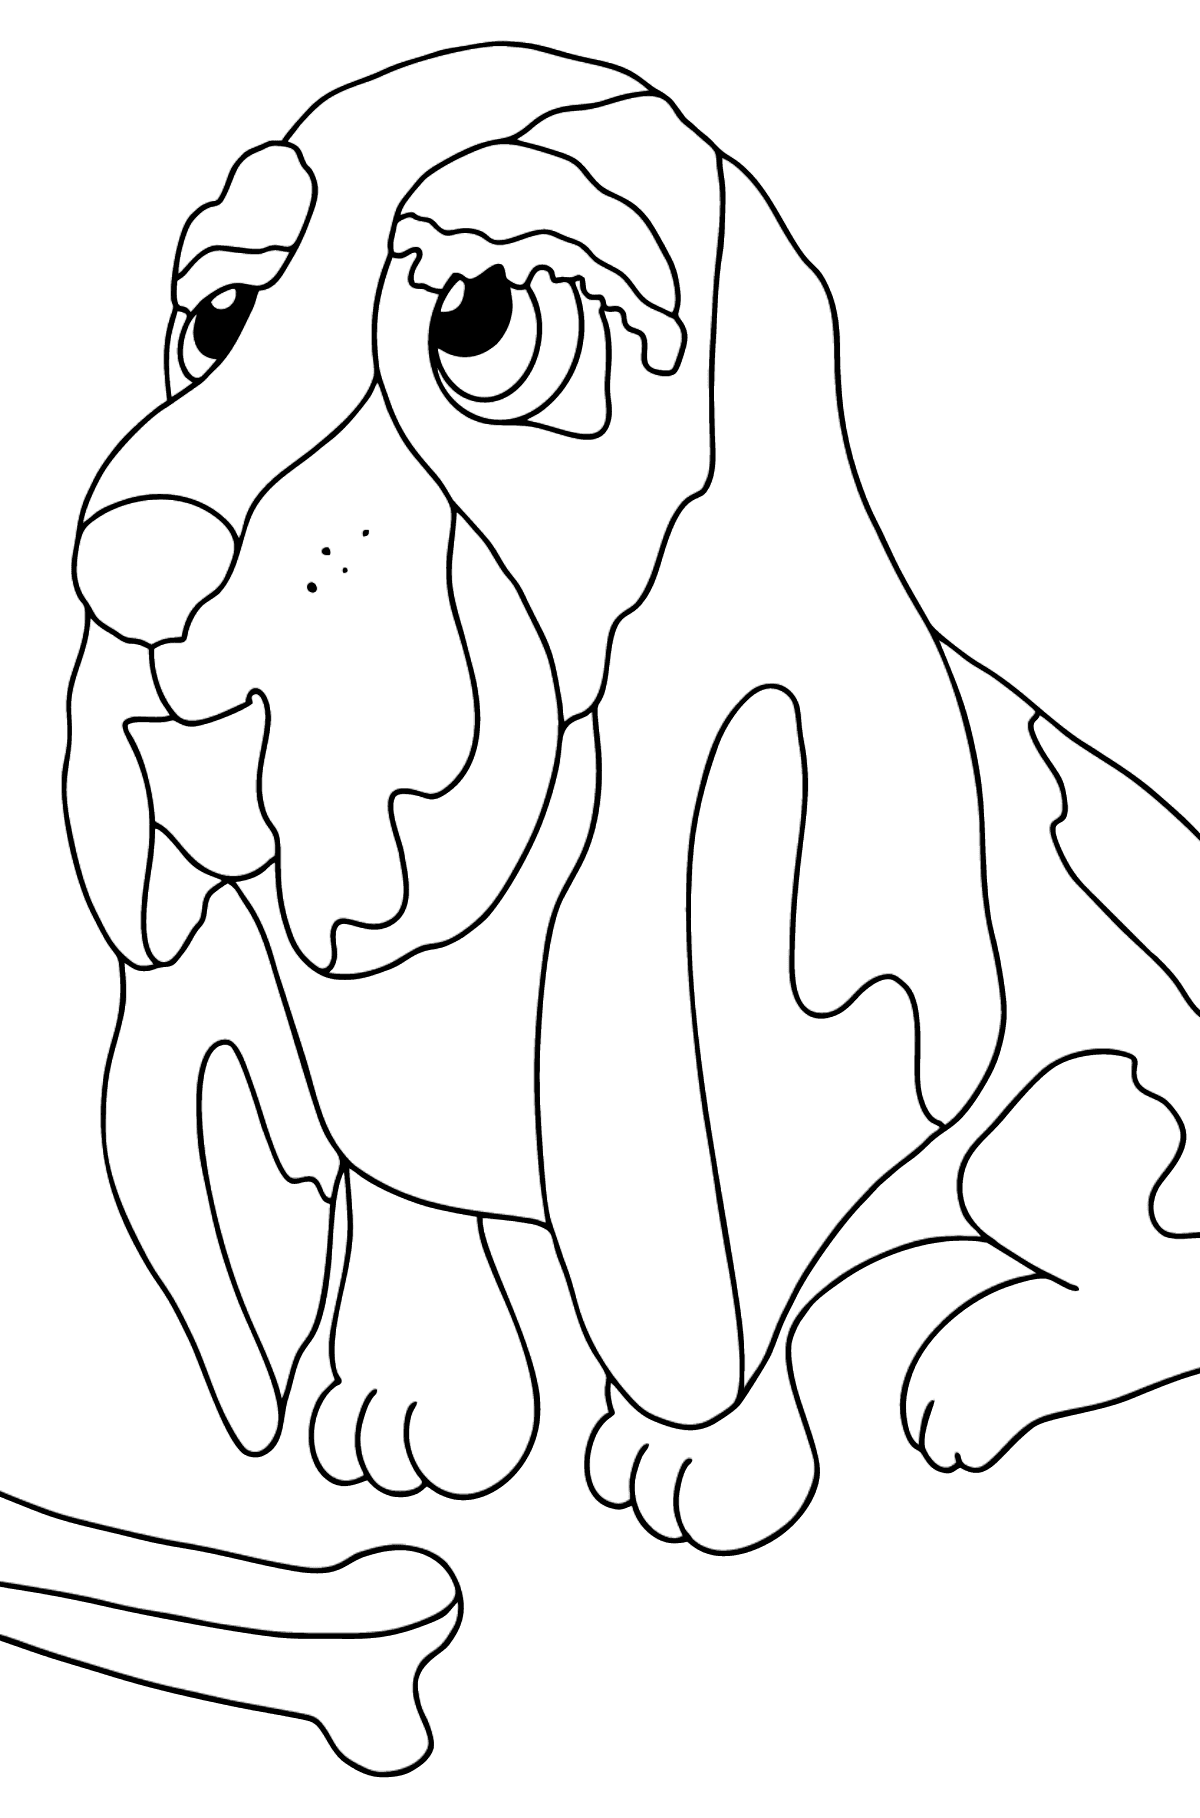 Desenho de cachorro com osso para colorir - Imagens para Colorir para Crianças